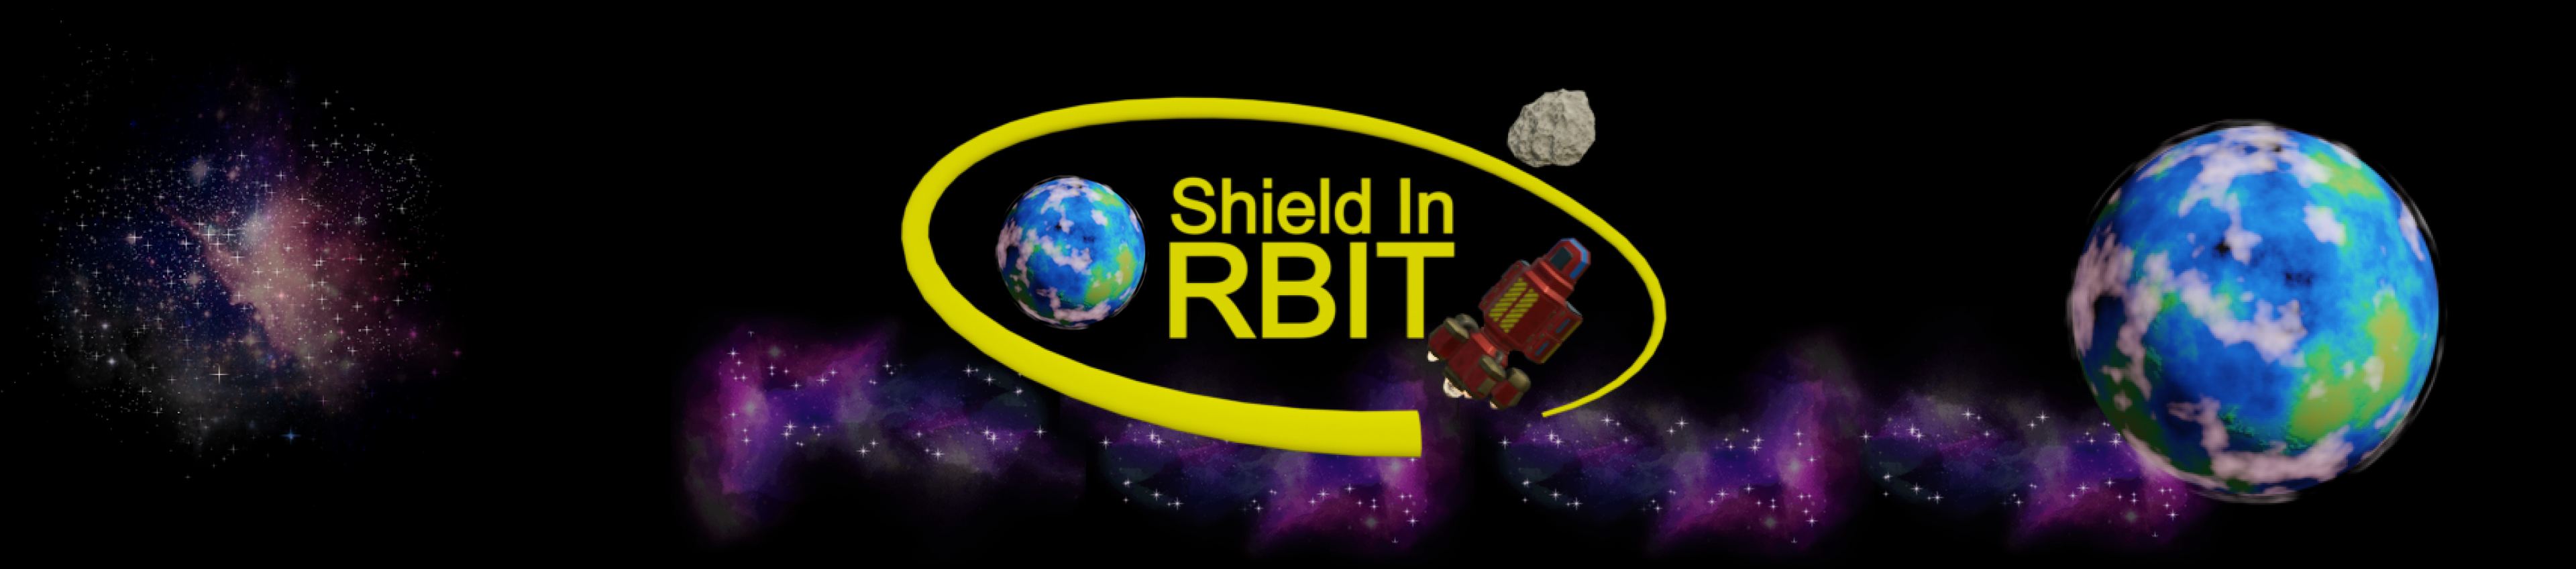 Shield in Orbit